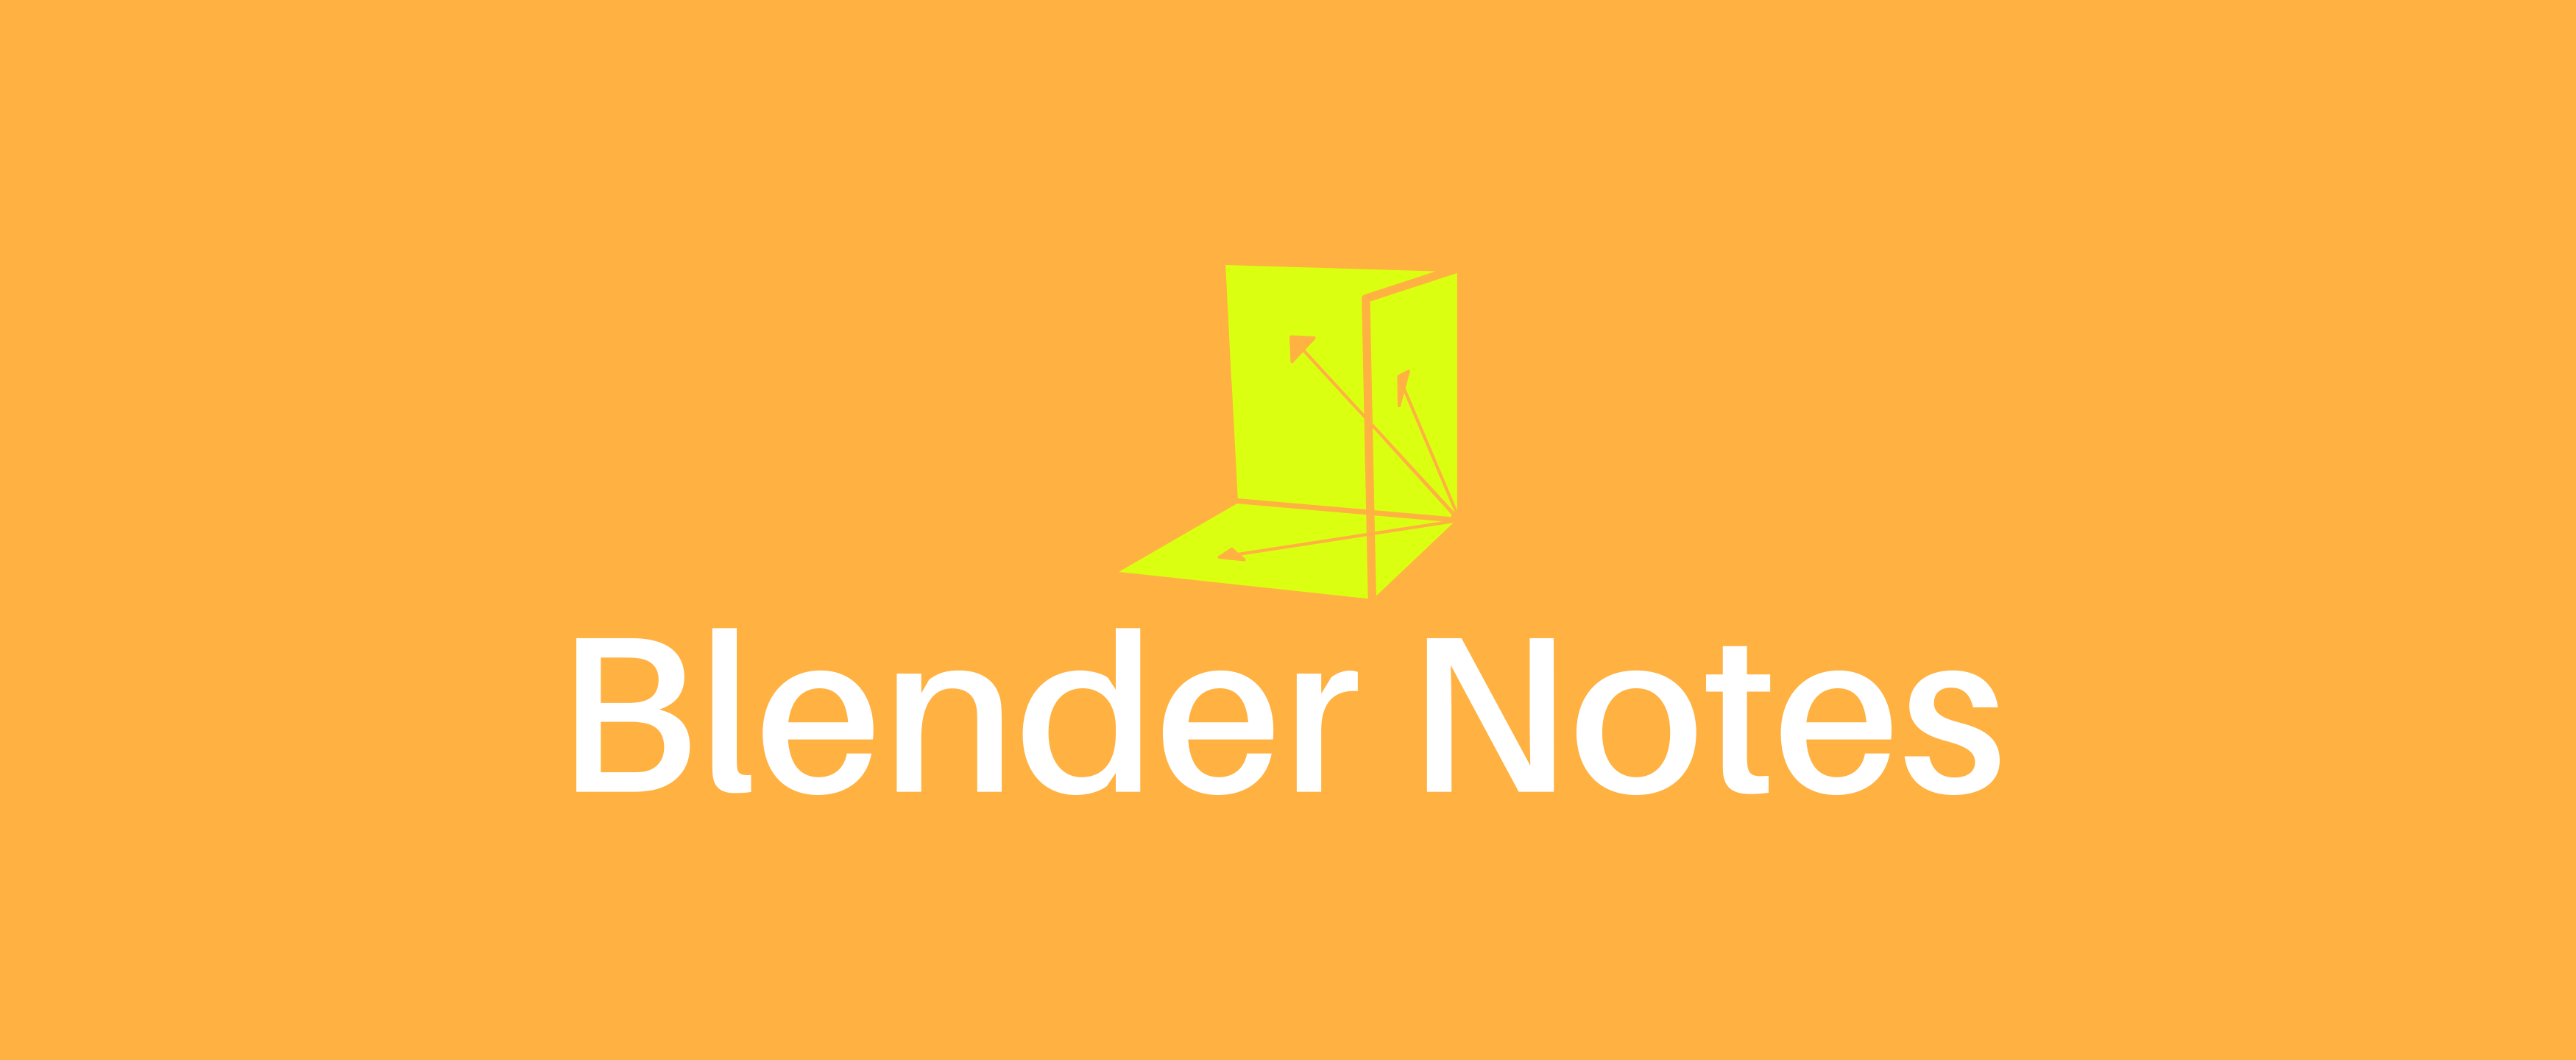 Blender Notes